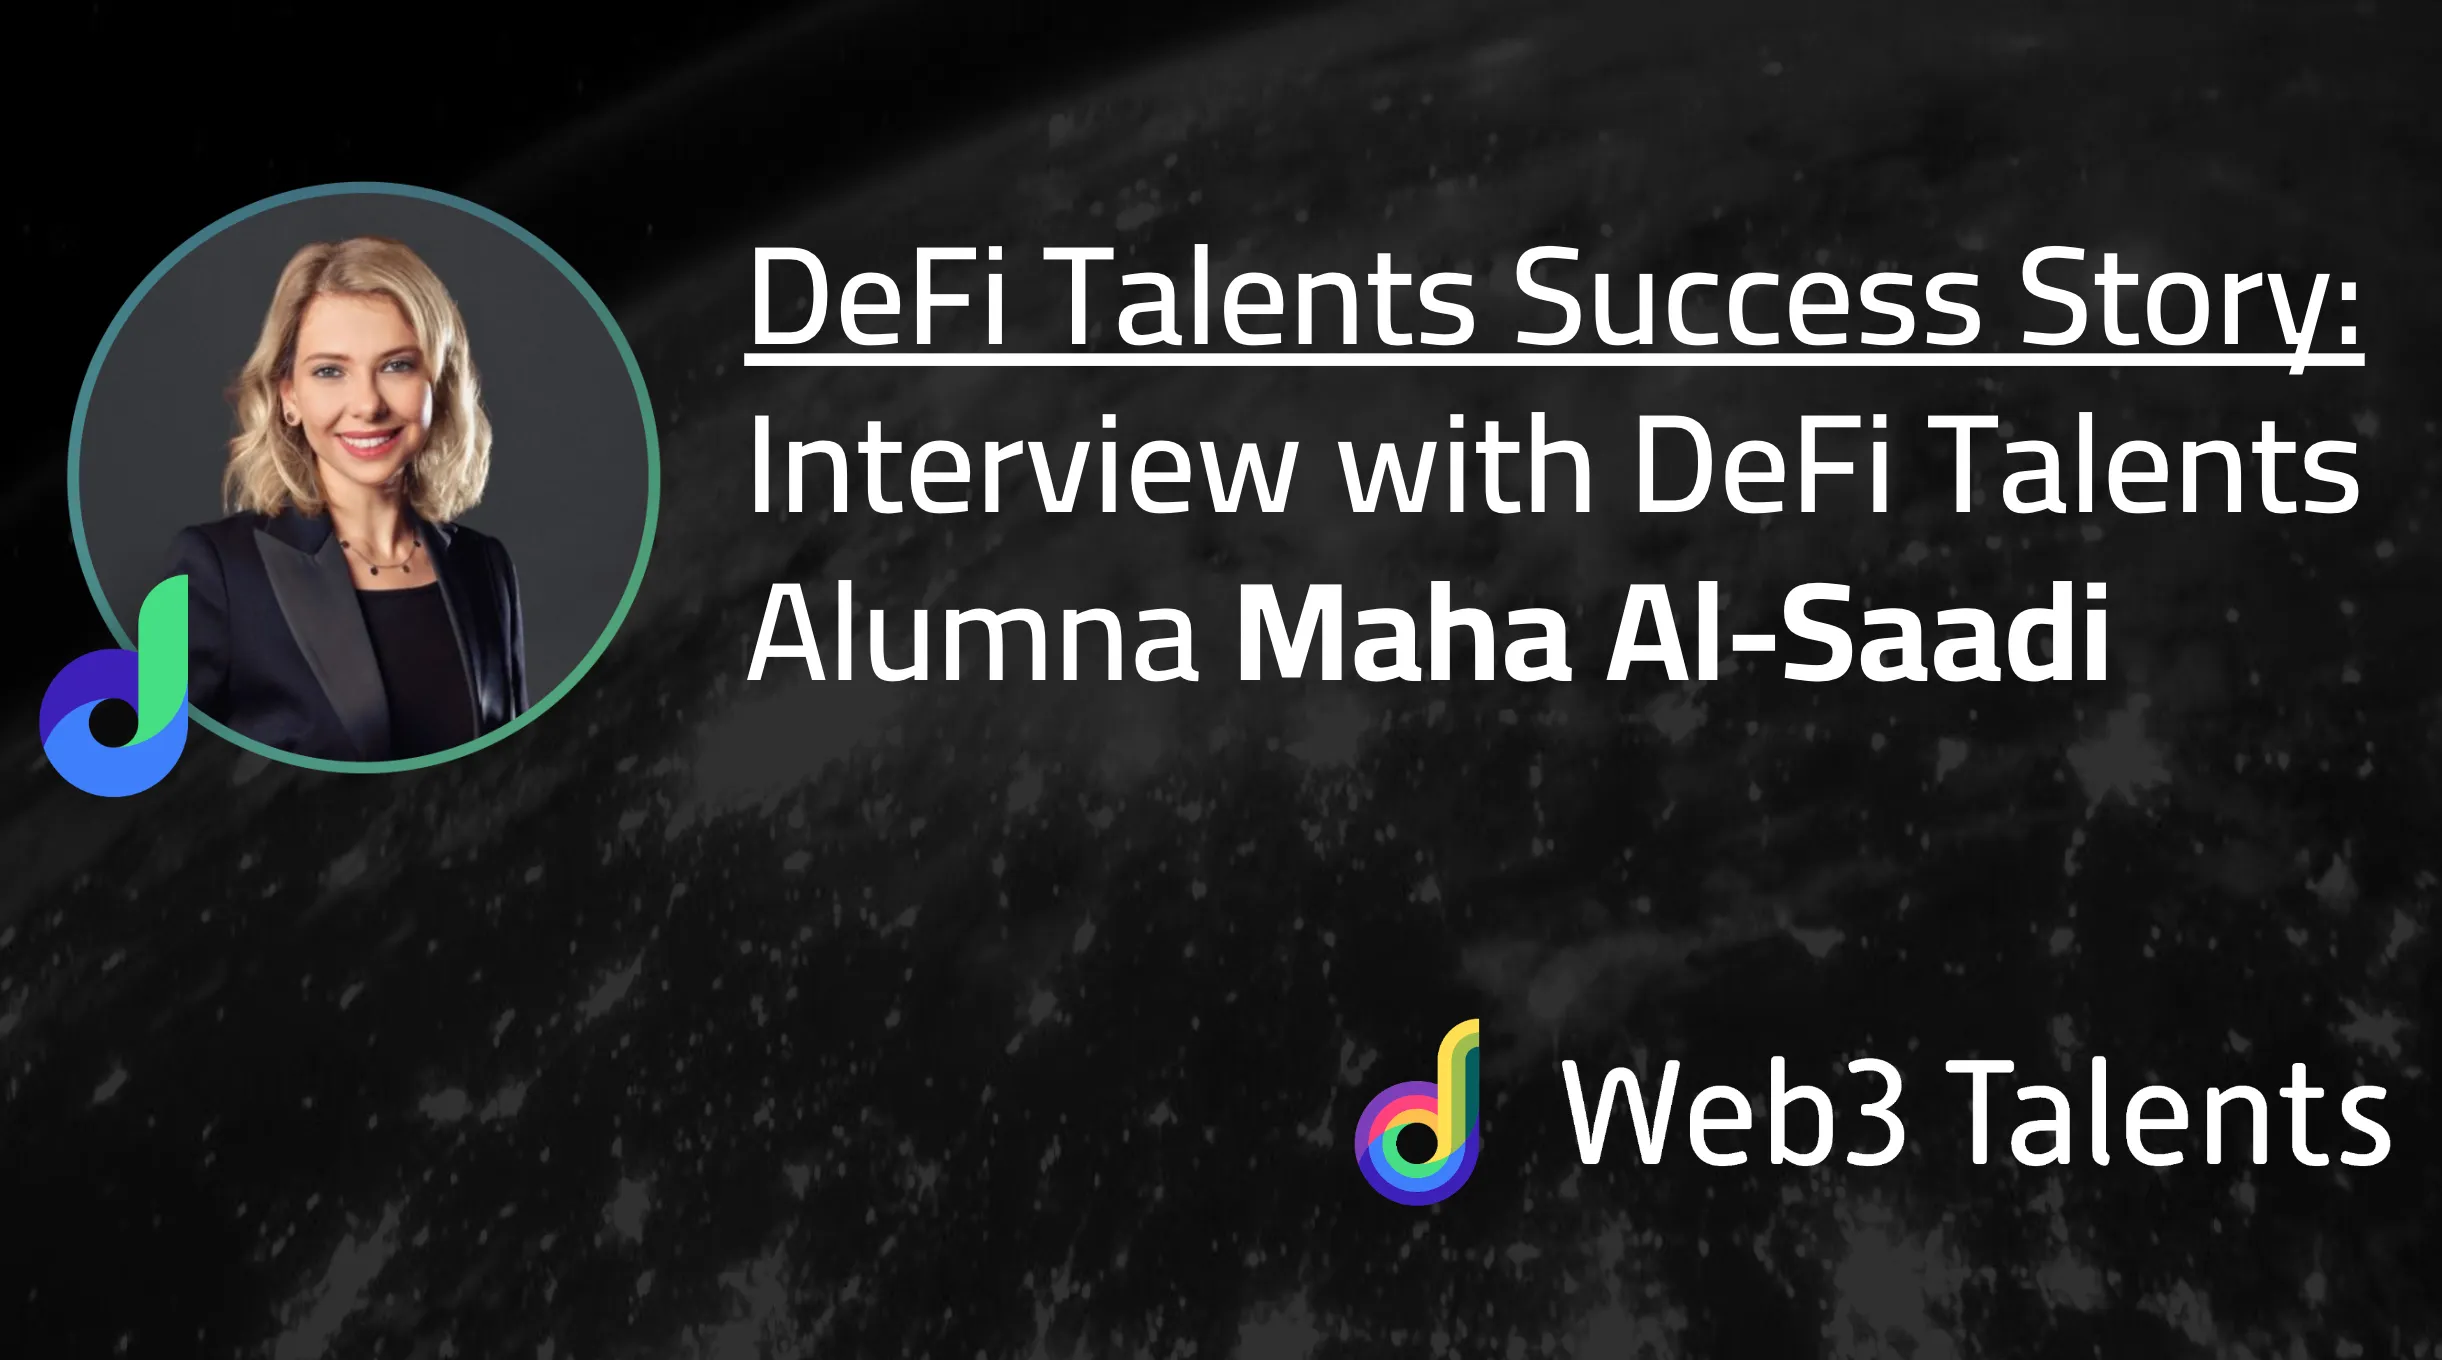 DeFi Talents Success Story: Maha Al-Saadi